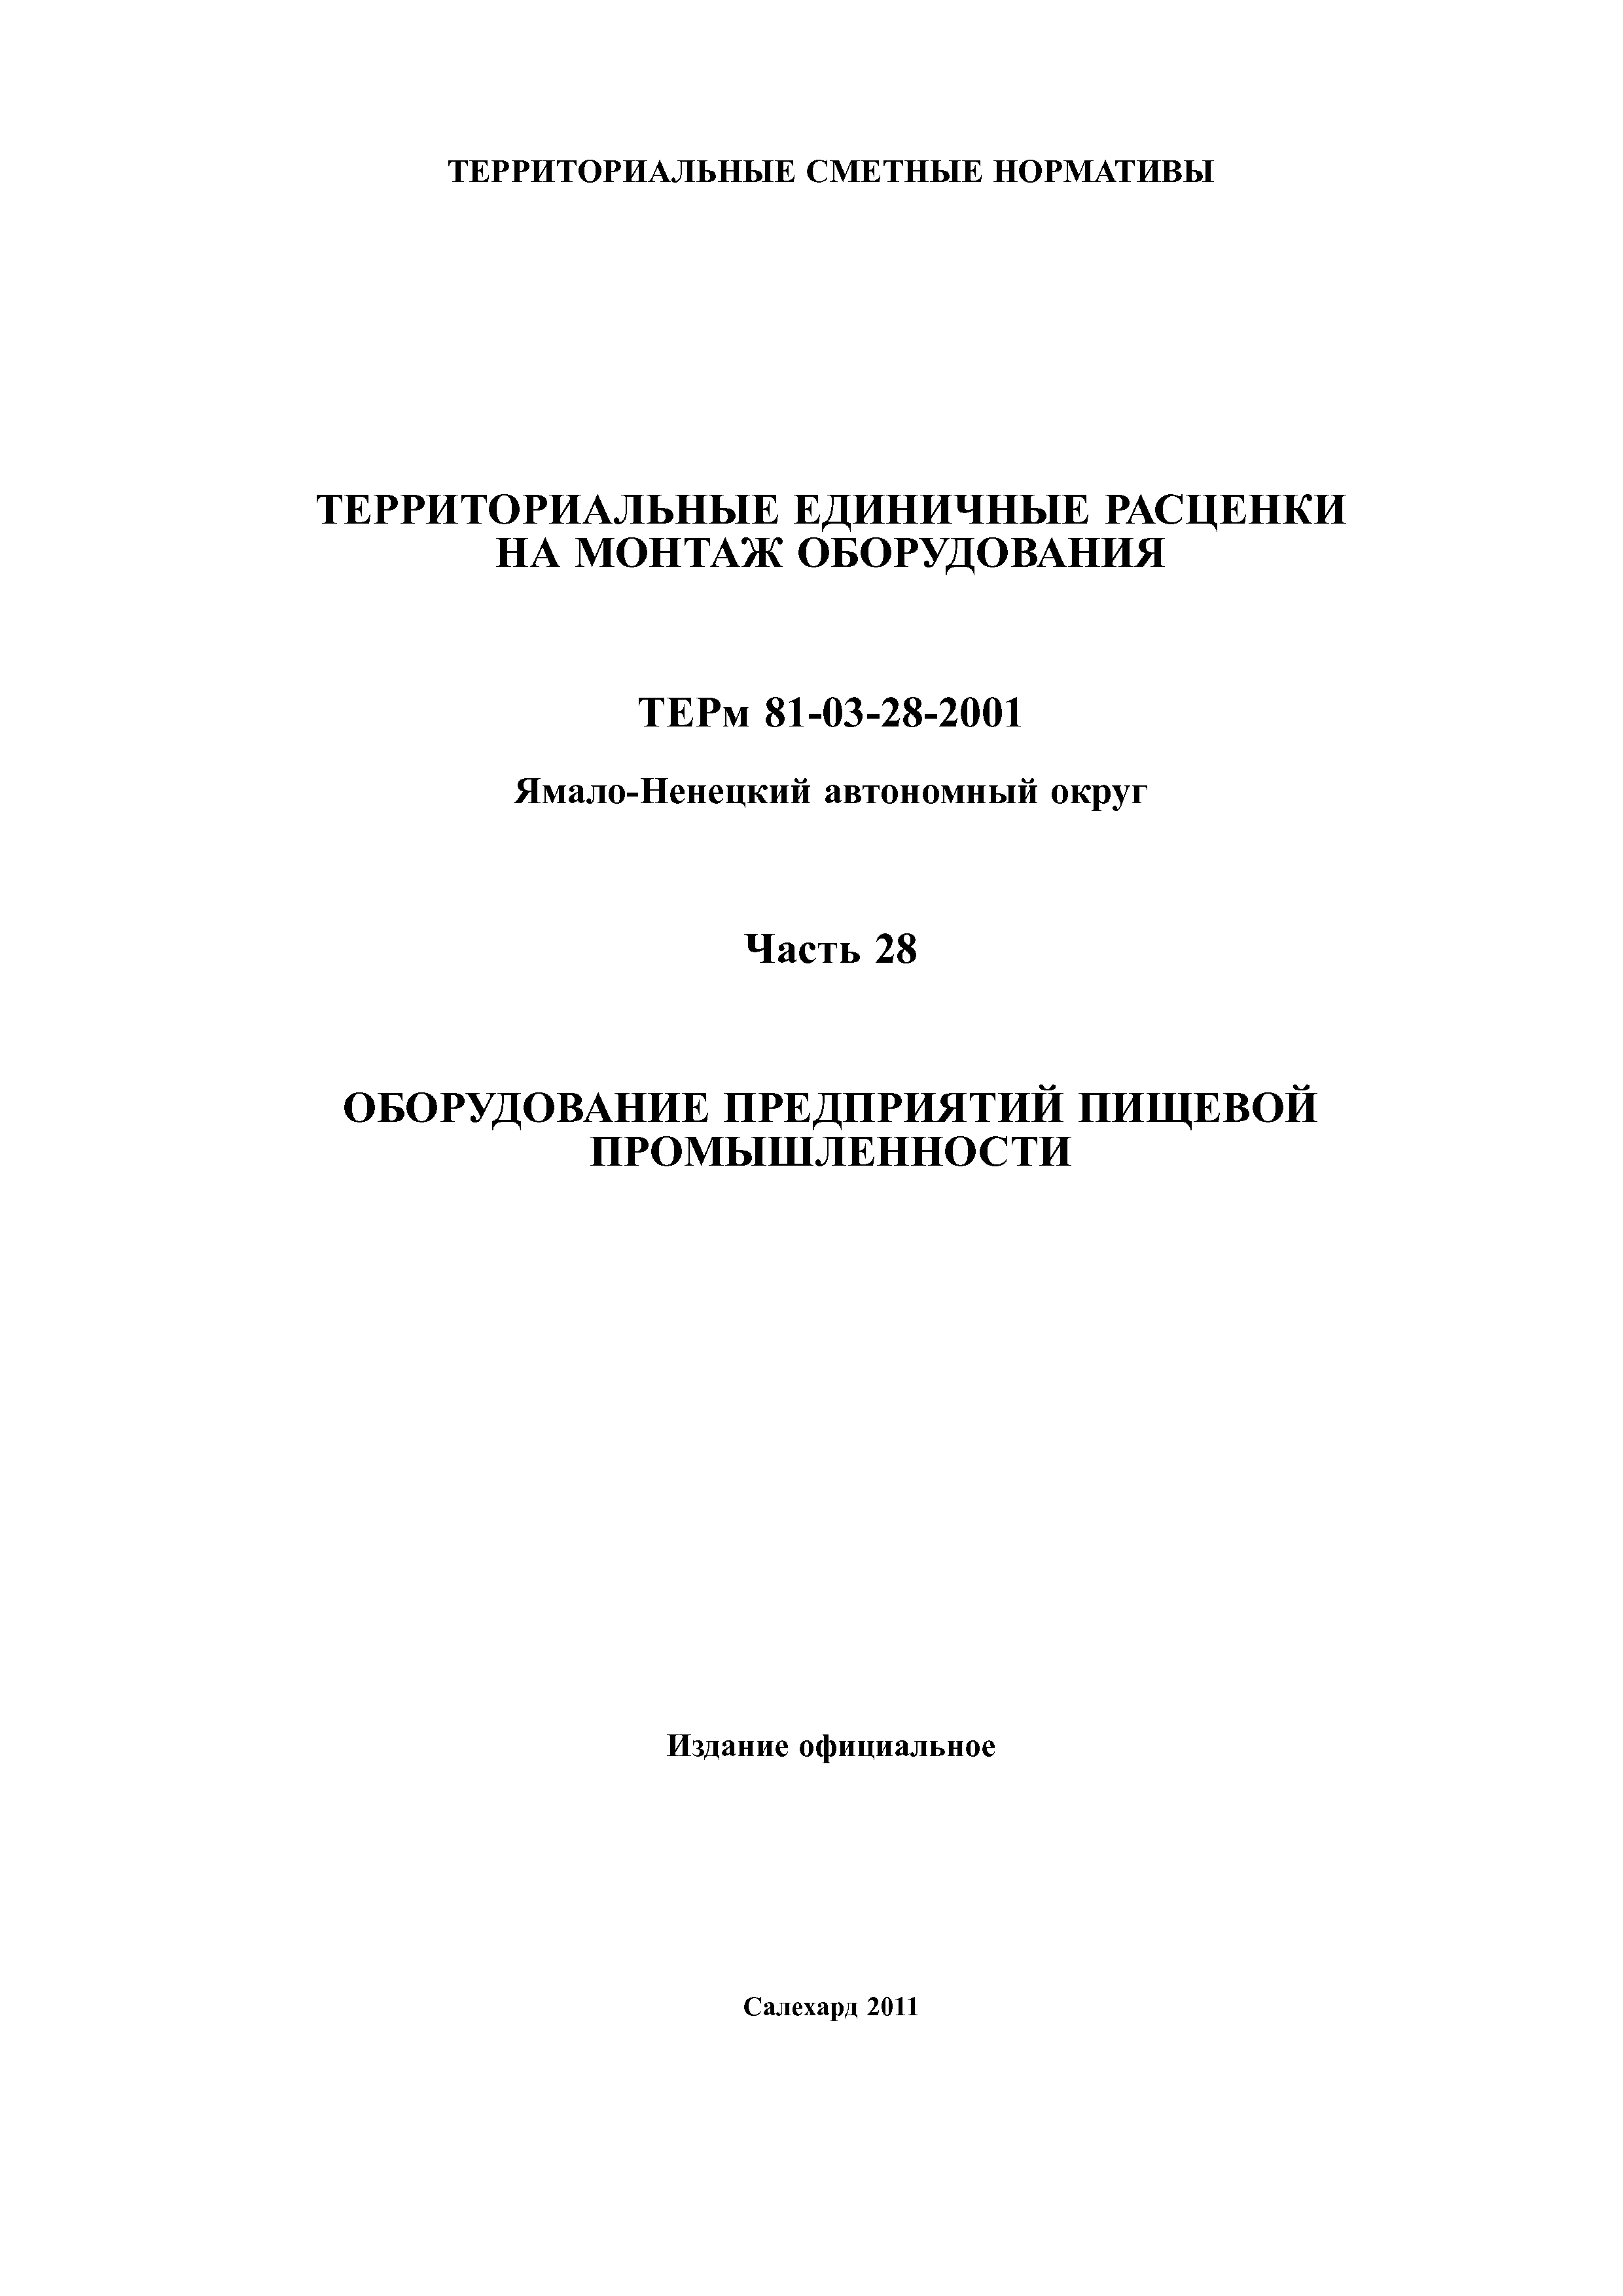 ТЕРм Ямало-Ненецкий автономный округ 28-2001